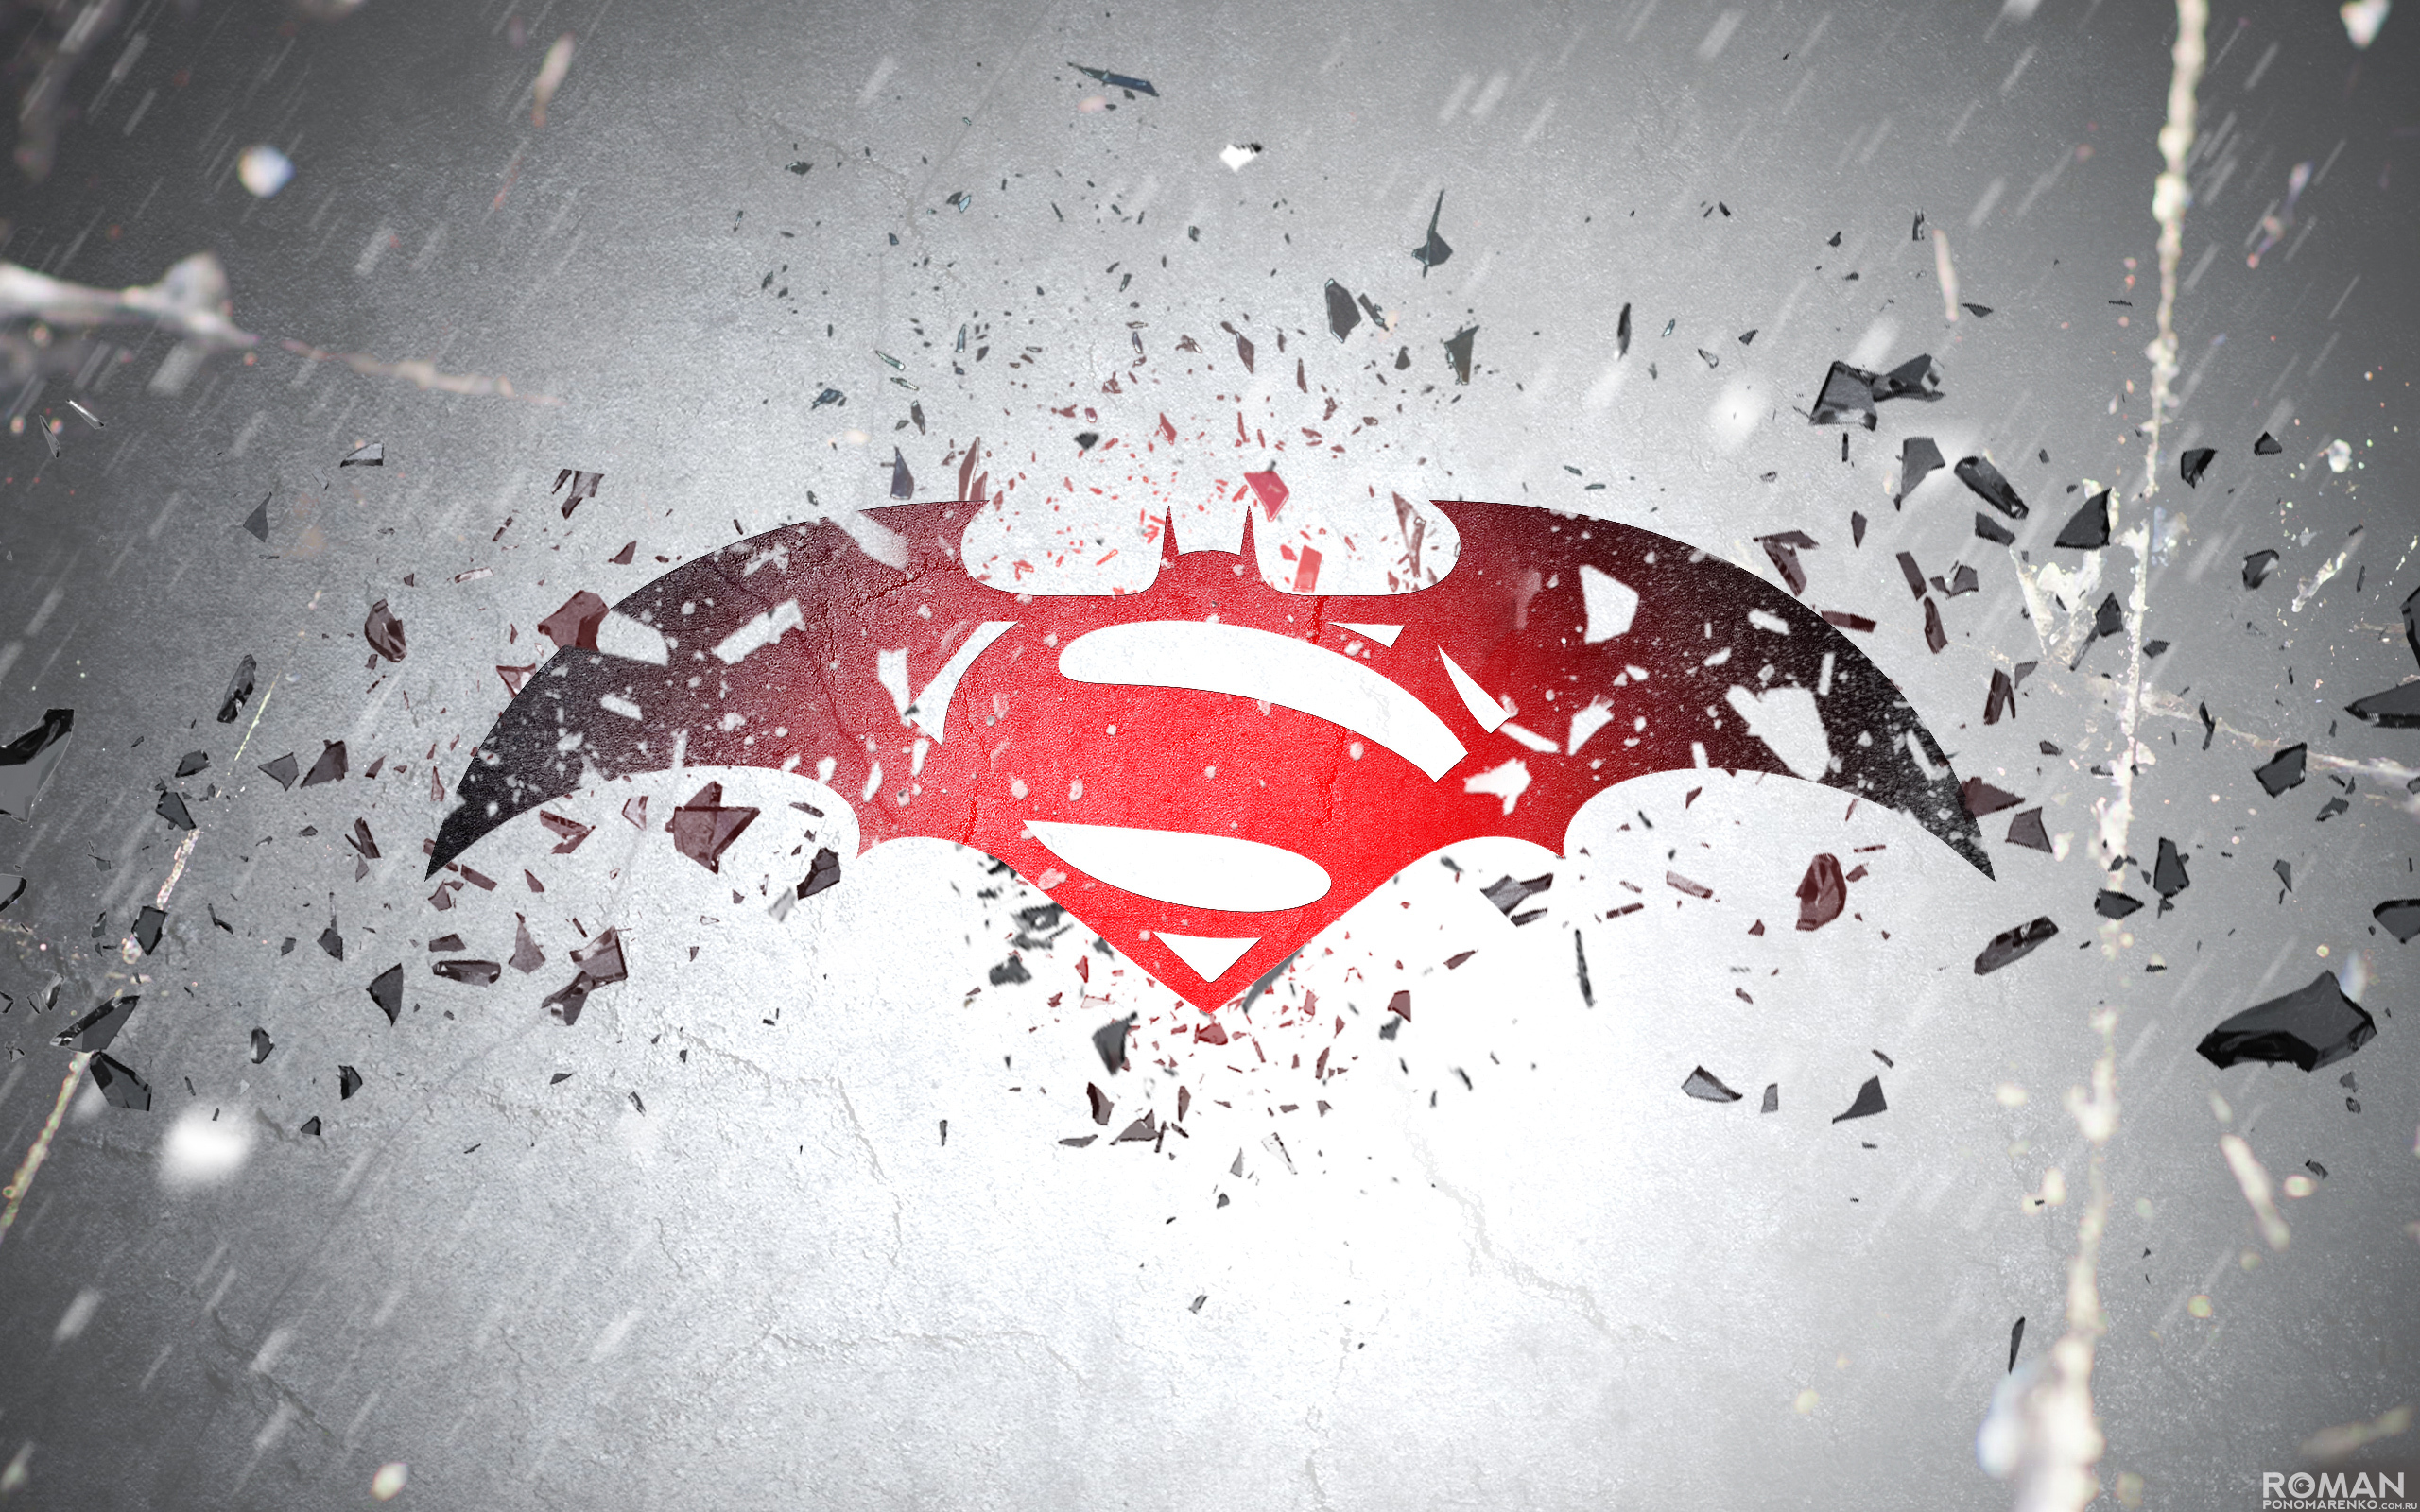 Epic Batman V Superman Fan Trailer Bines All The Trailers In